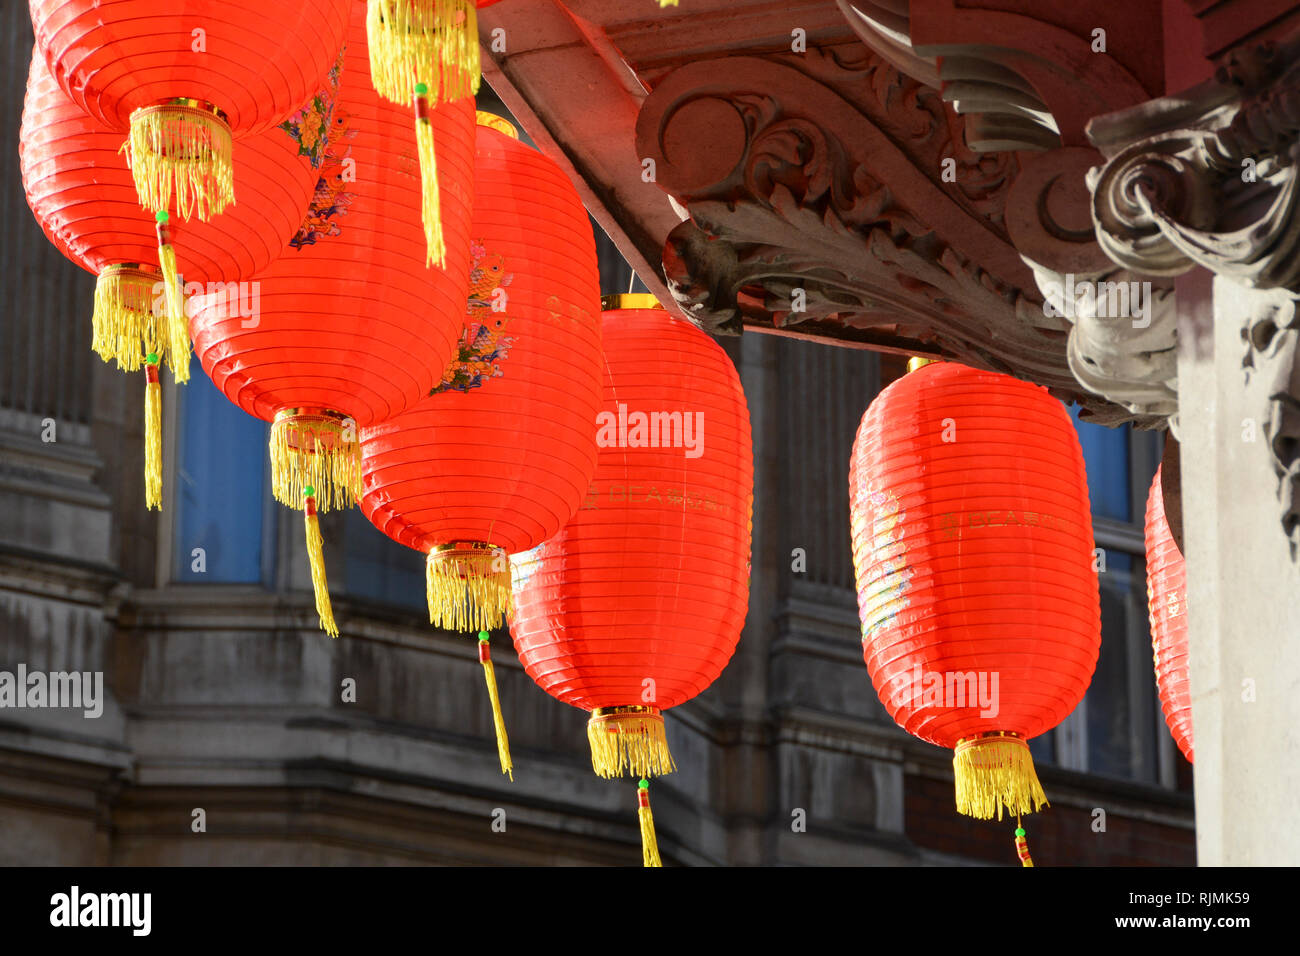 Anno del maiale cinese di Nuovo Anno decorazioni in Soho, London, Regno Unito Foto Stock